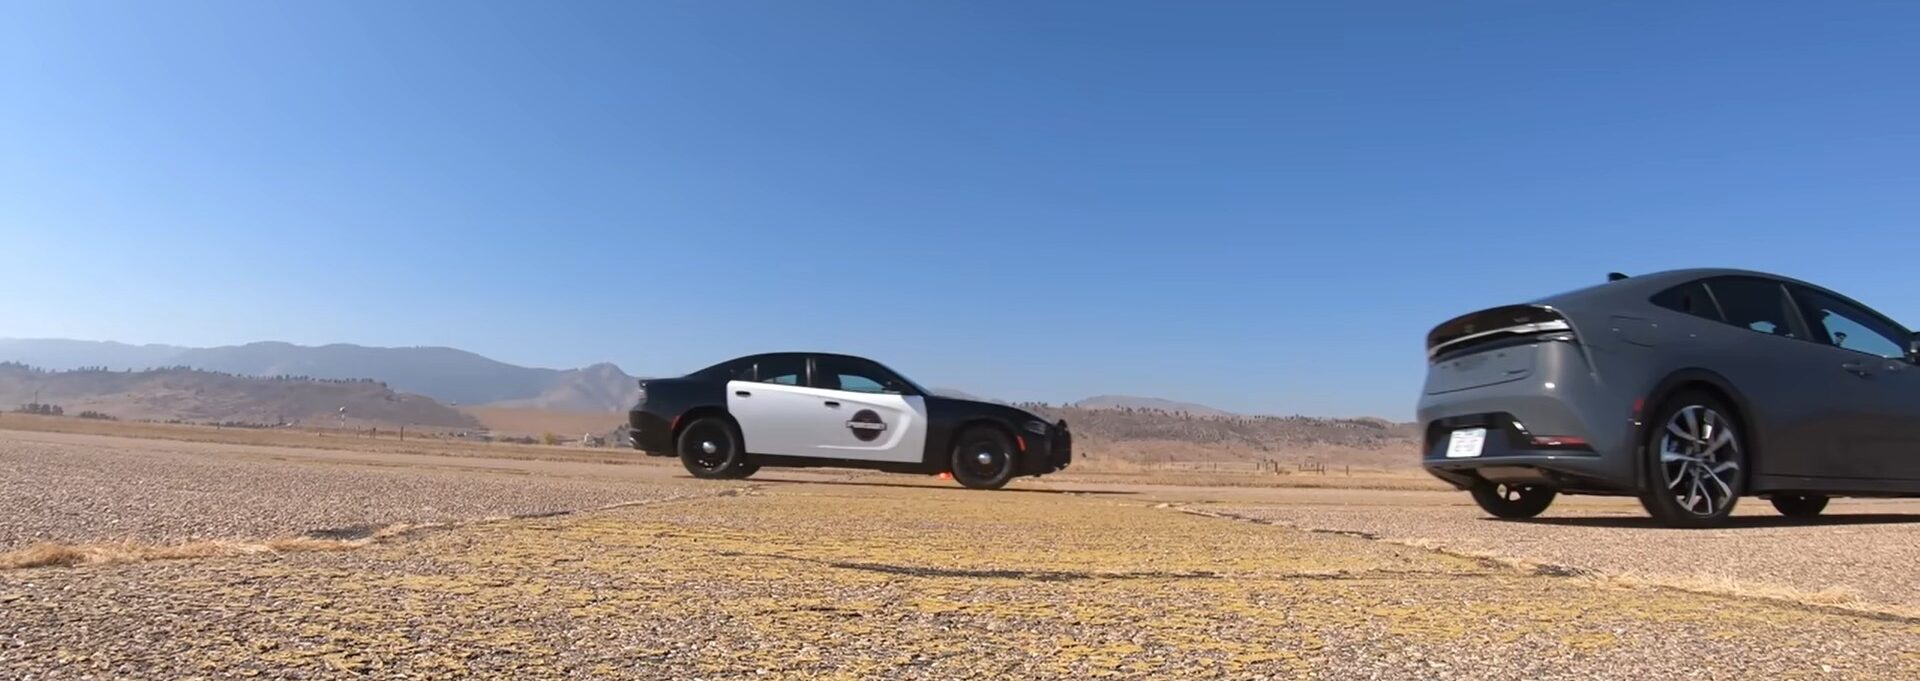 Toyota Prius соревнуется с V8 Dodge Charger Pursuit и побеждает, конечно, есть подвох